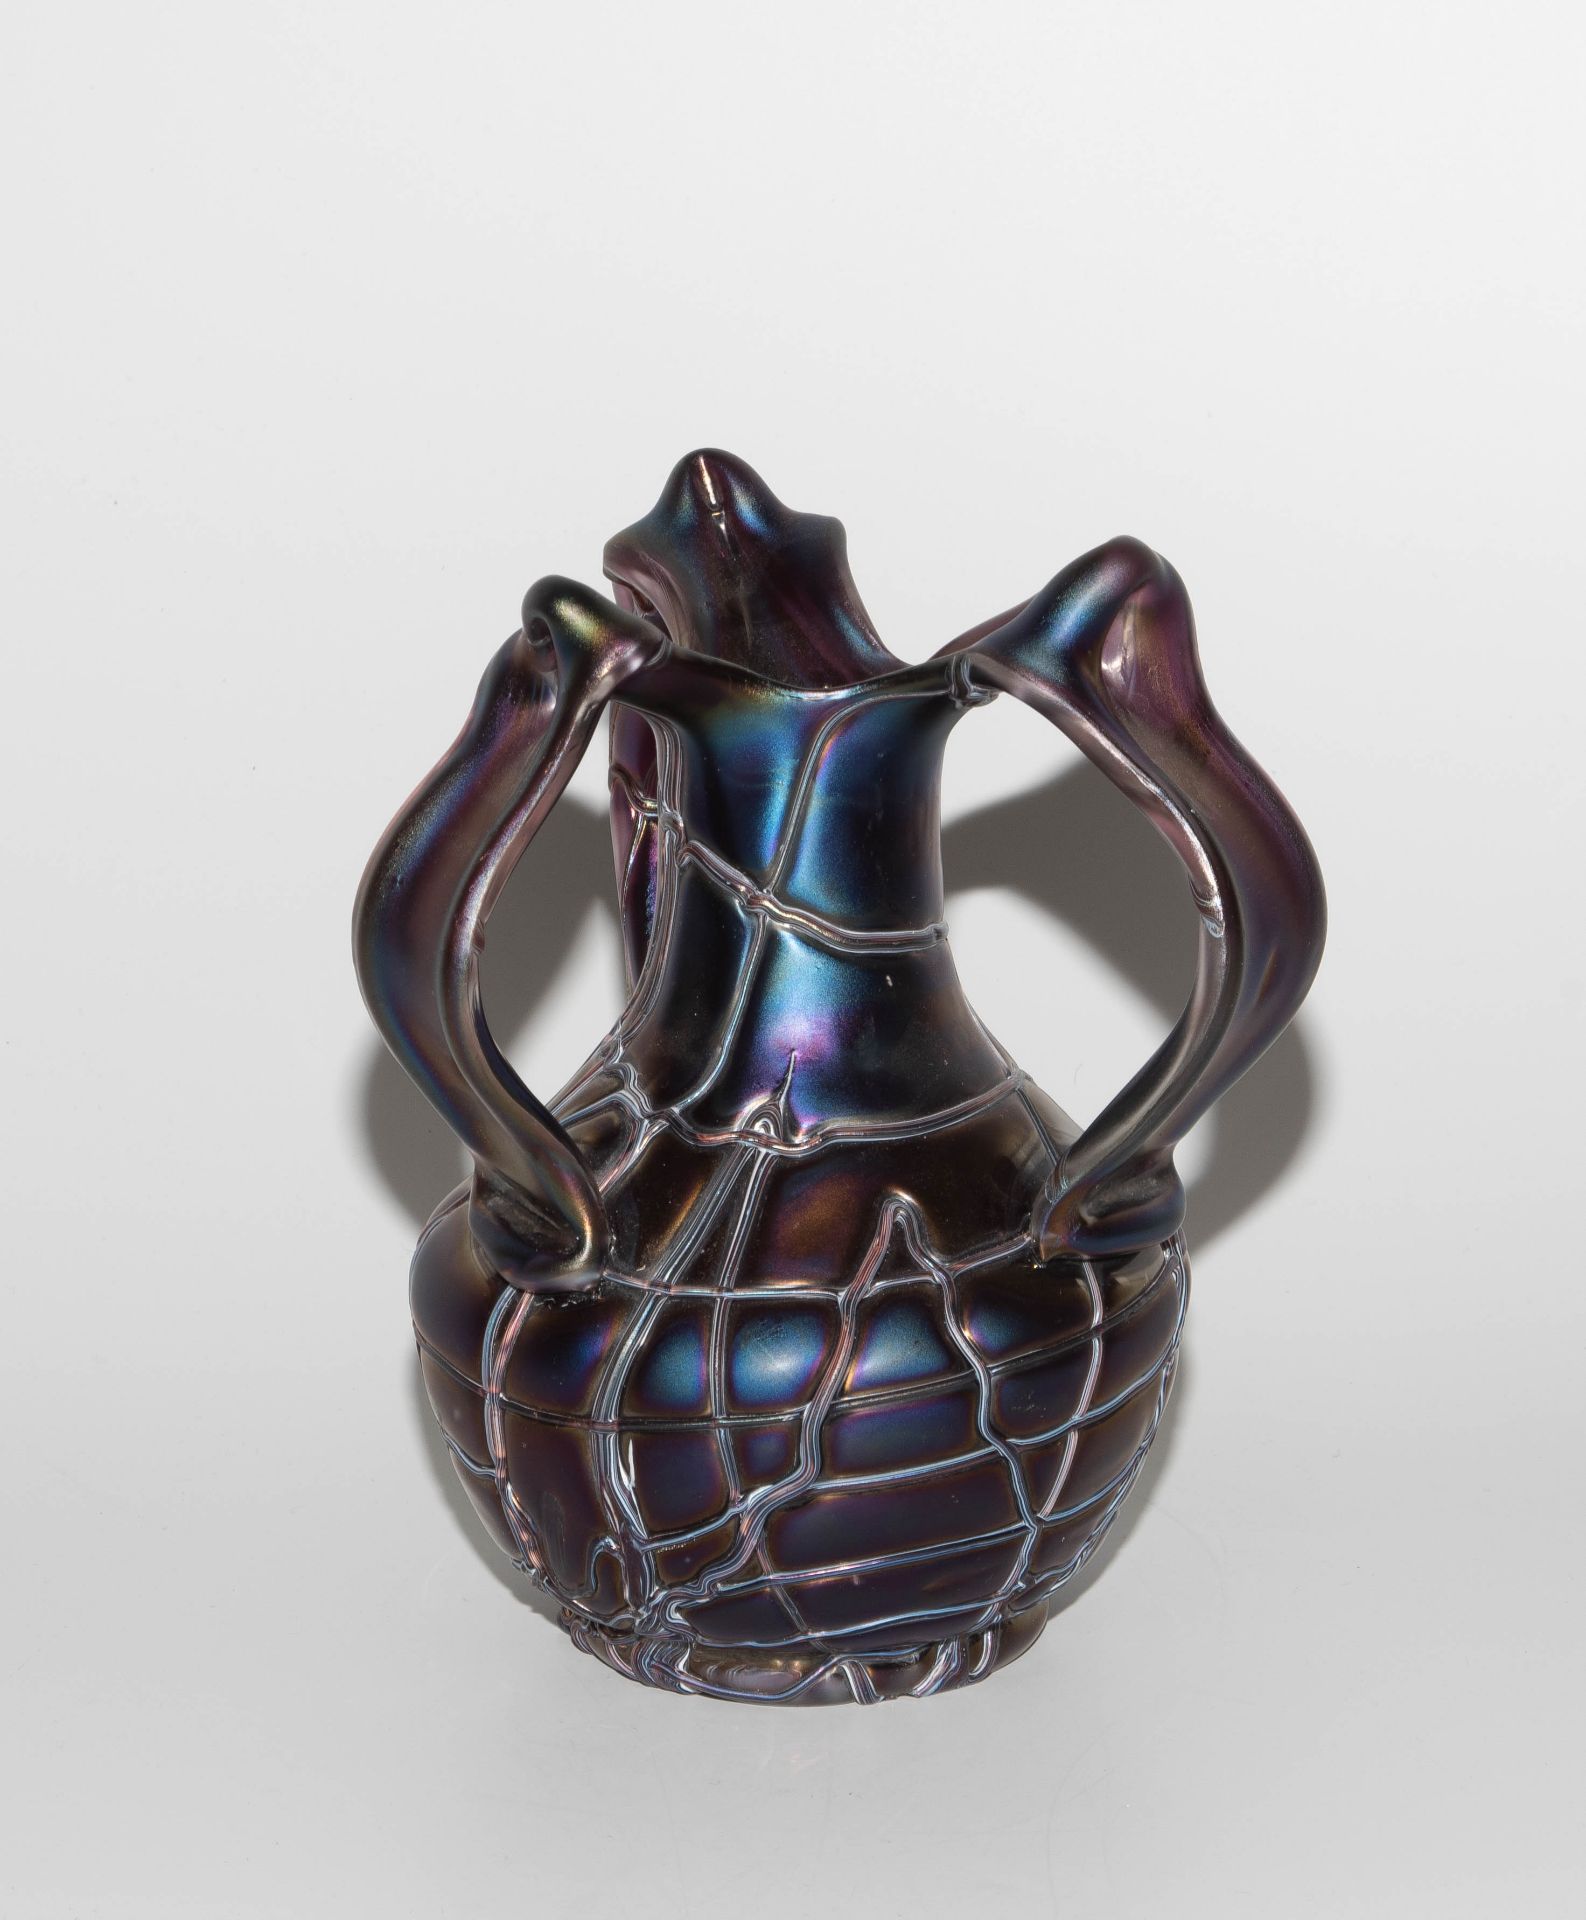 Pallme-König & Habel (zugeschrieben), Vase "Patras" - Image 2 of 7